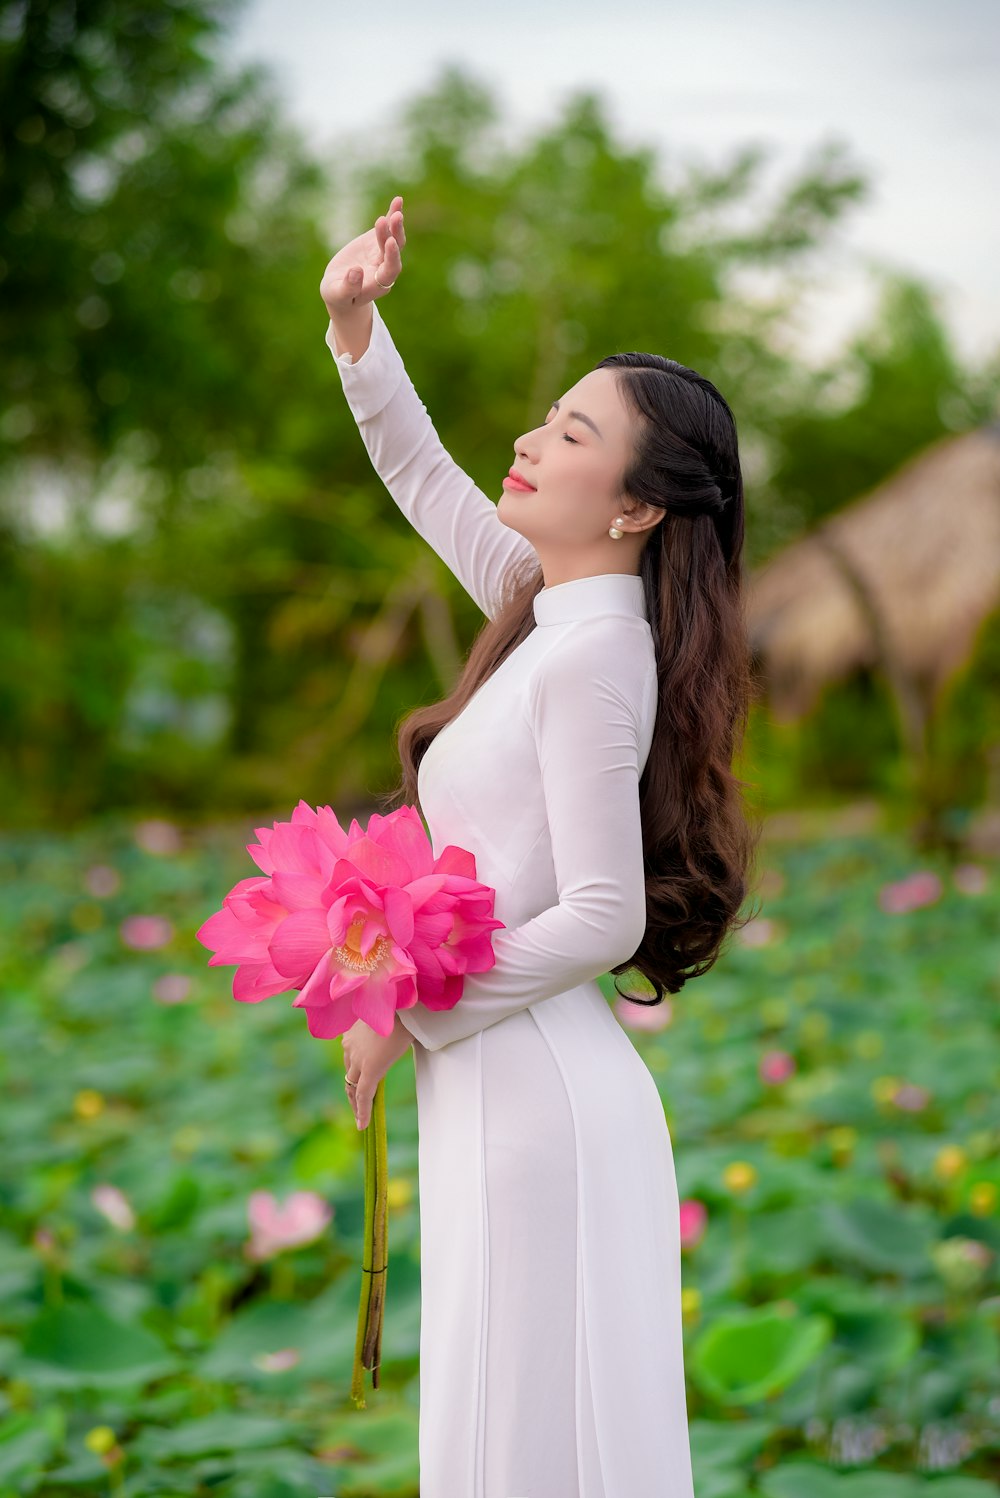 mulher no vestido branco da manga comprida que segura as flores cor-de-rosa